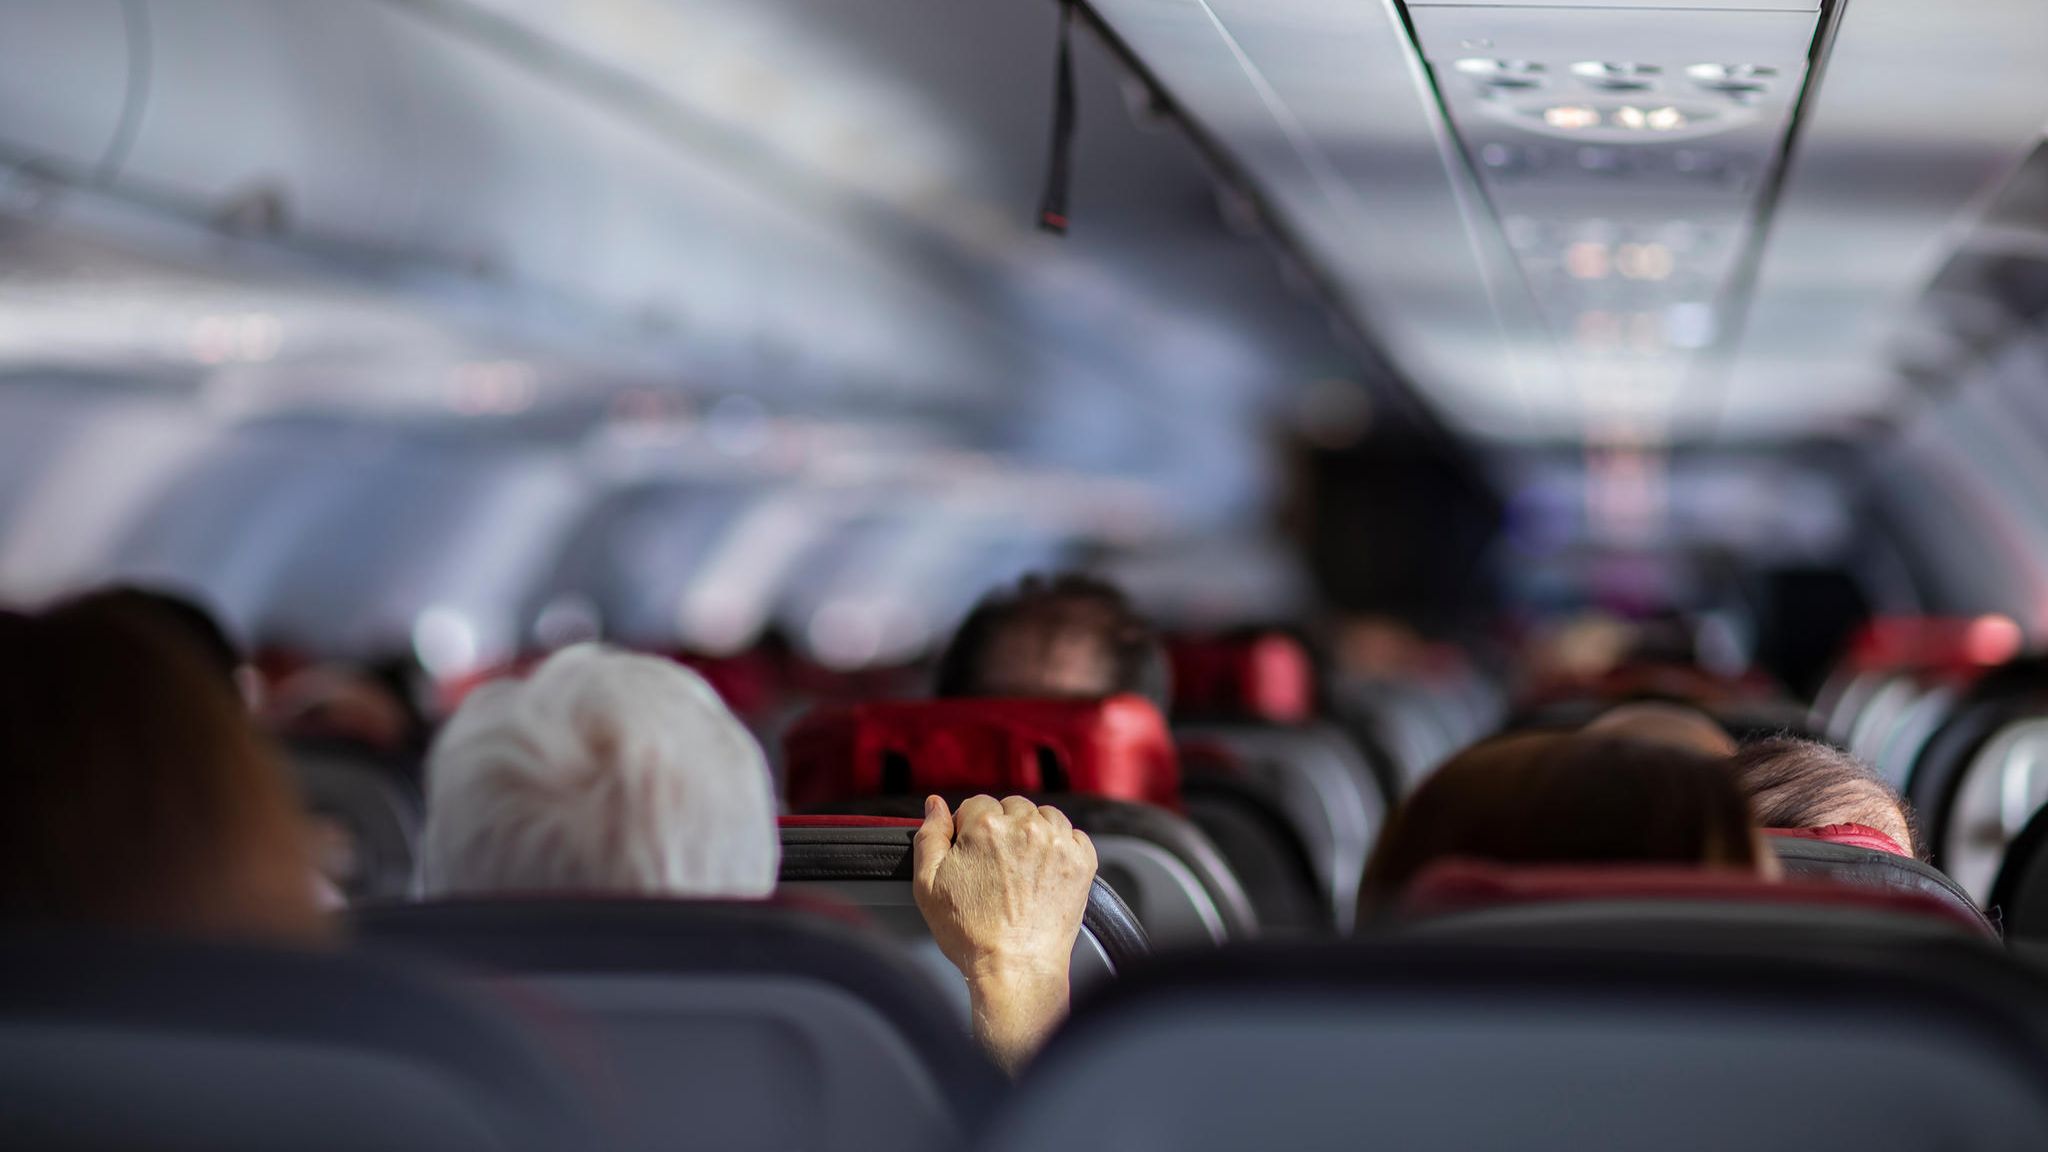 Fluggast verschickt Sex-Bilder an Passagiere und wird festgenommen STERN.de Foto Bild